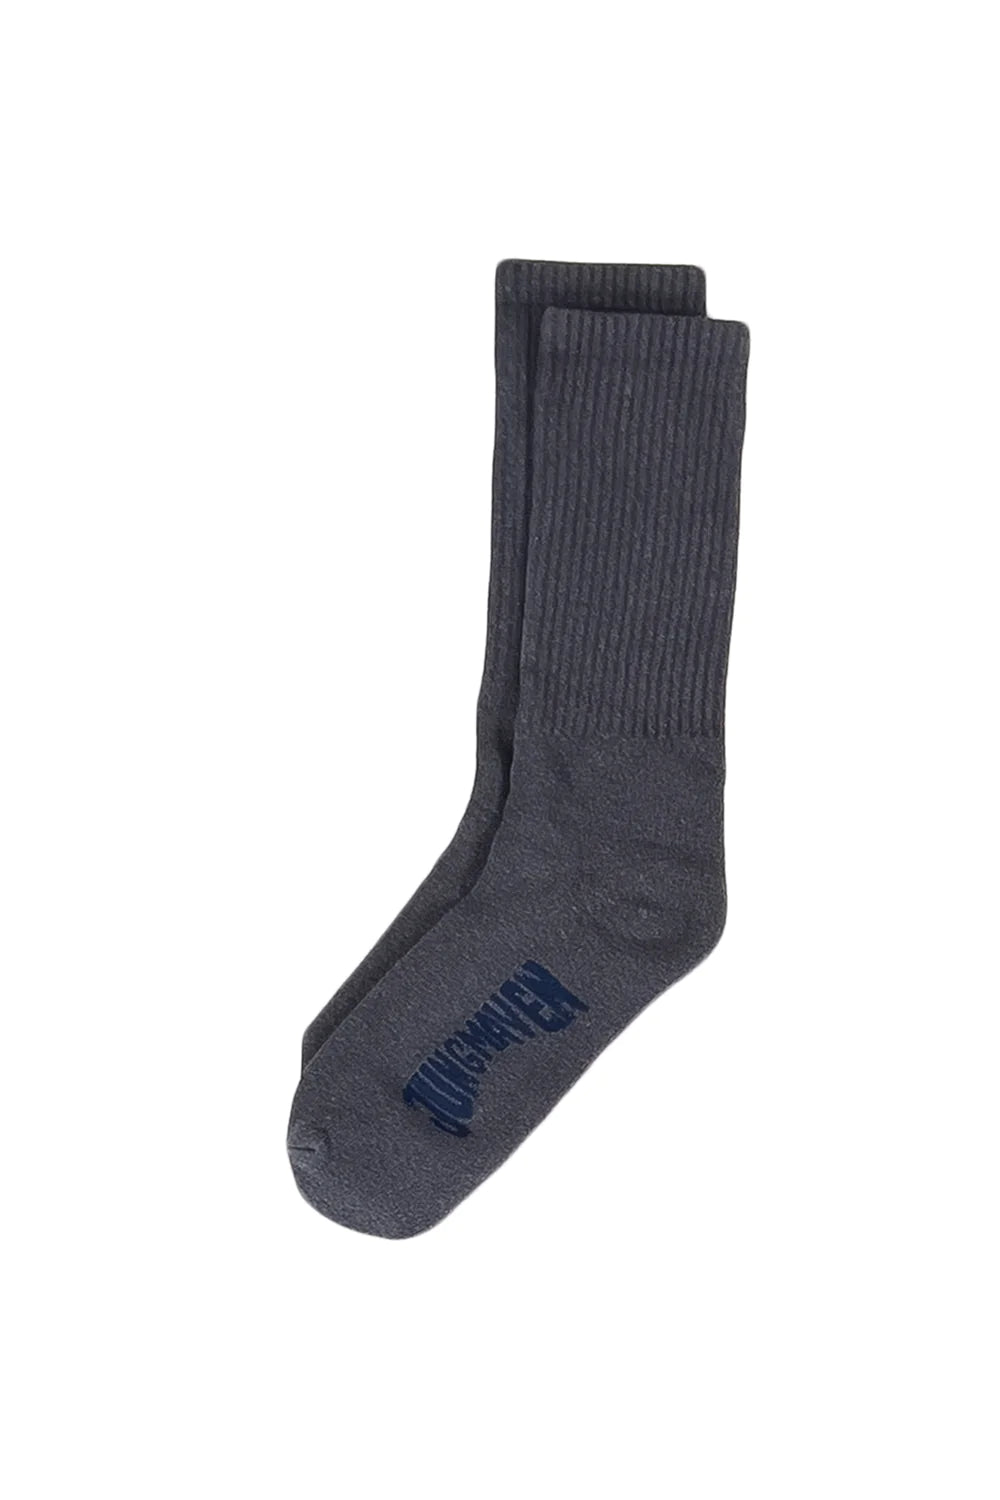 socks + tights – ad penticton hoc